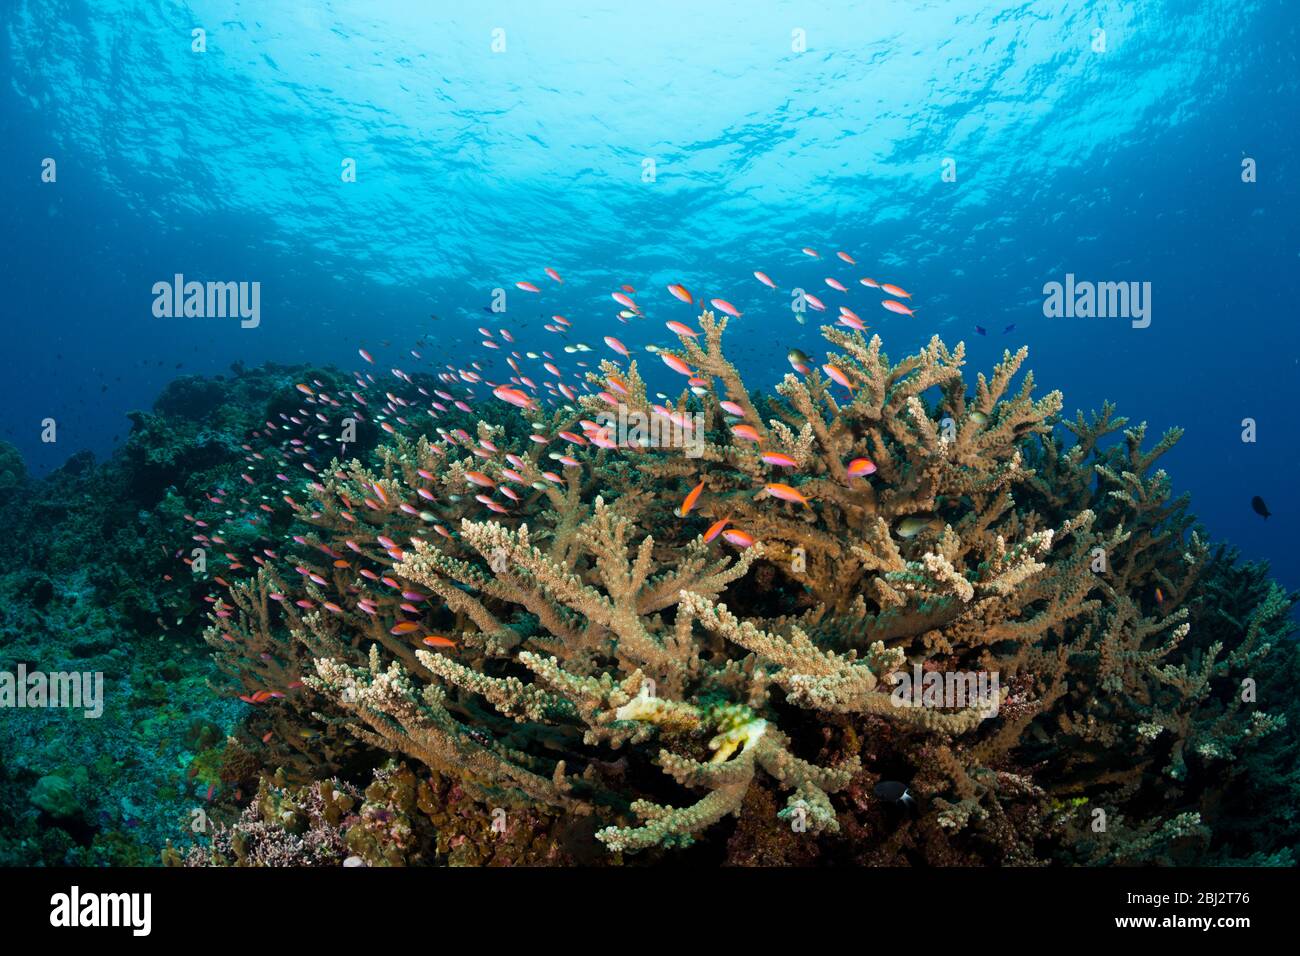 Pacific Anthias over Coral Reef, Pseudanthias cheirospilos, Kimbe Bay, New Britain, Papua New Guinea Stock Photo